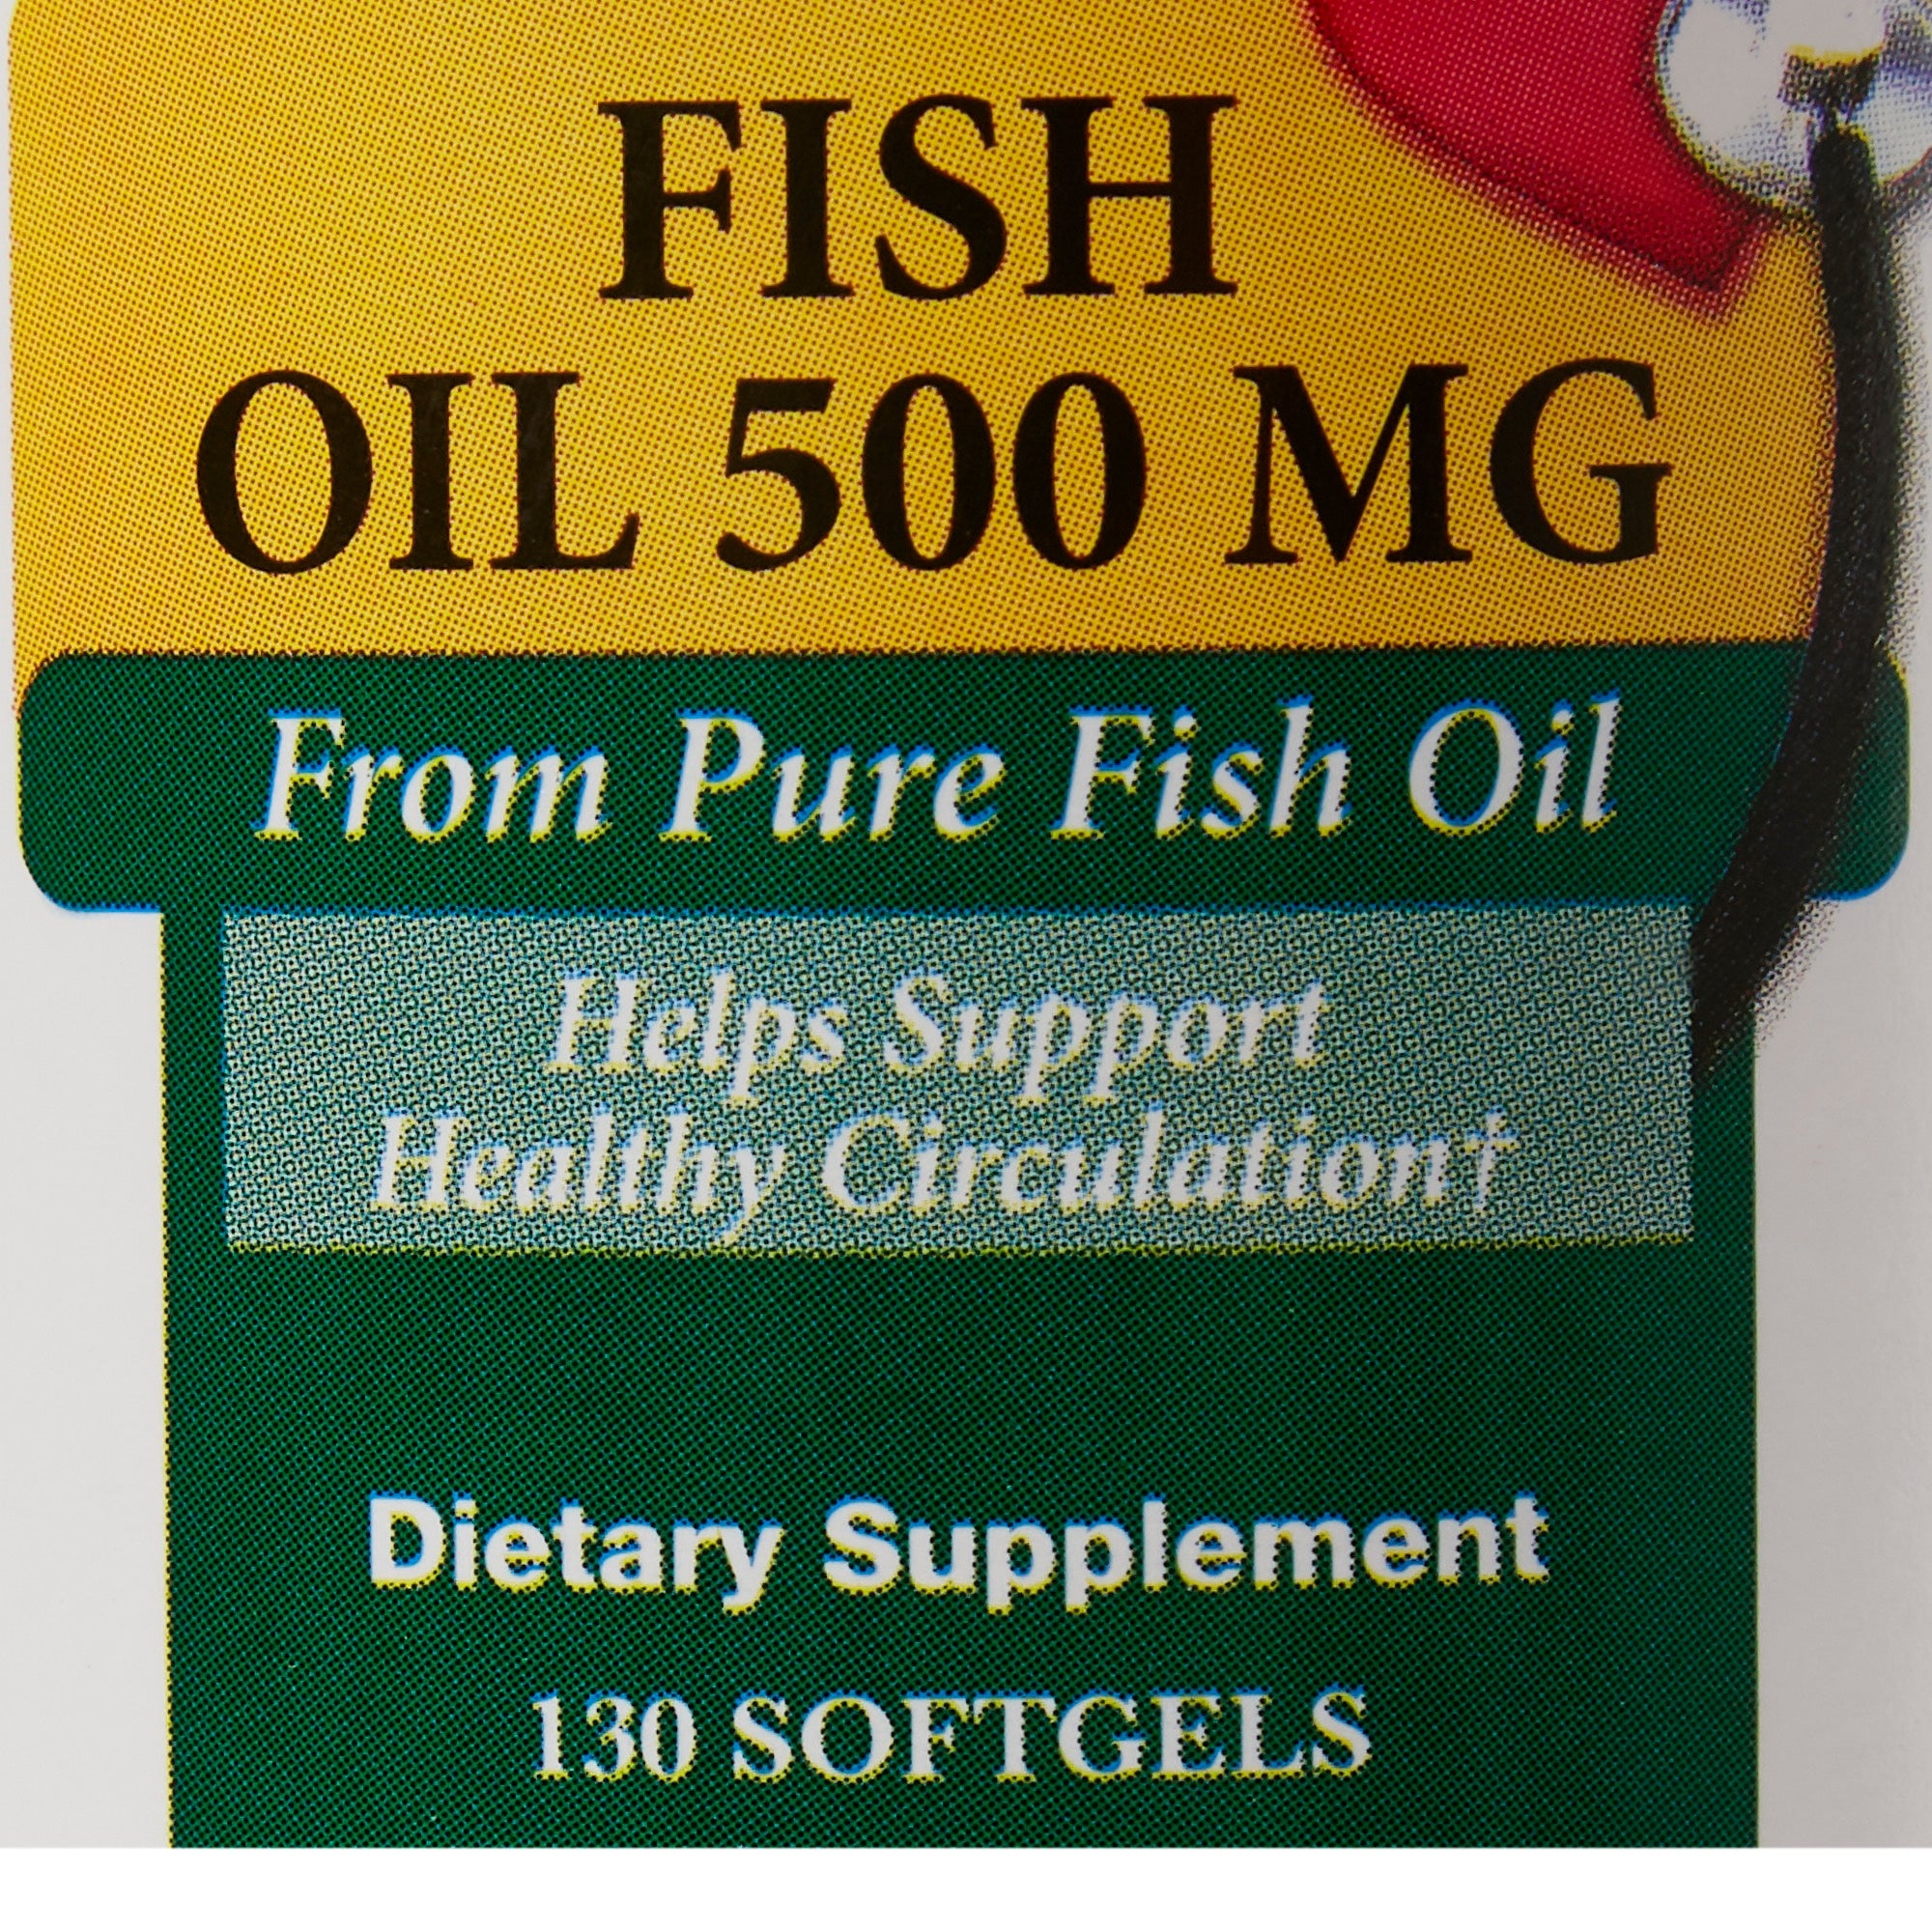 Omega 3 Supplement Major Fish Oil 500 mg Strength Softgel 130 per Bottle